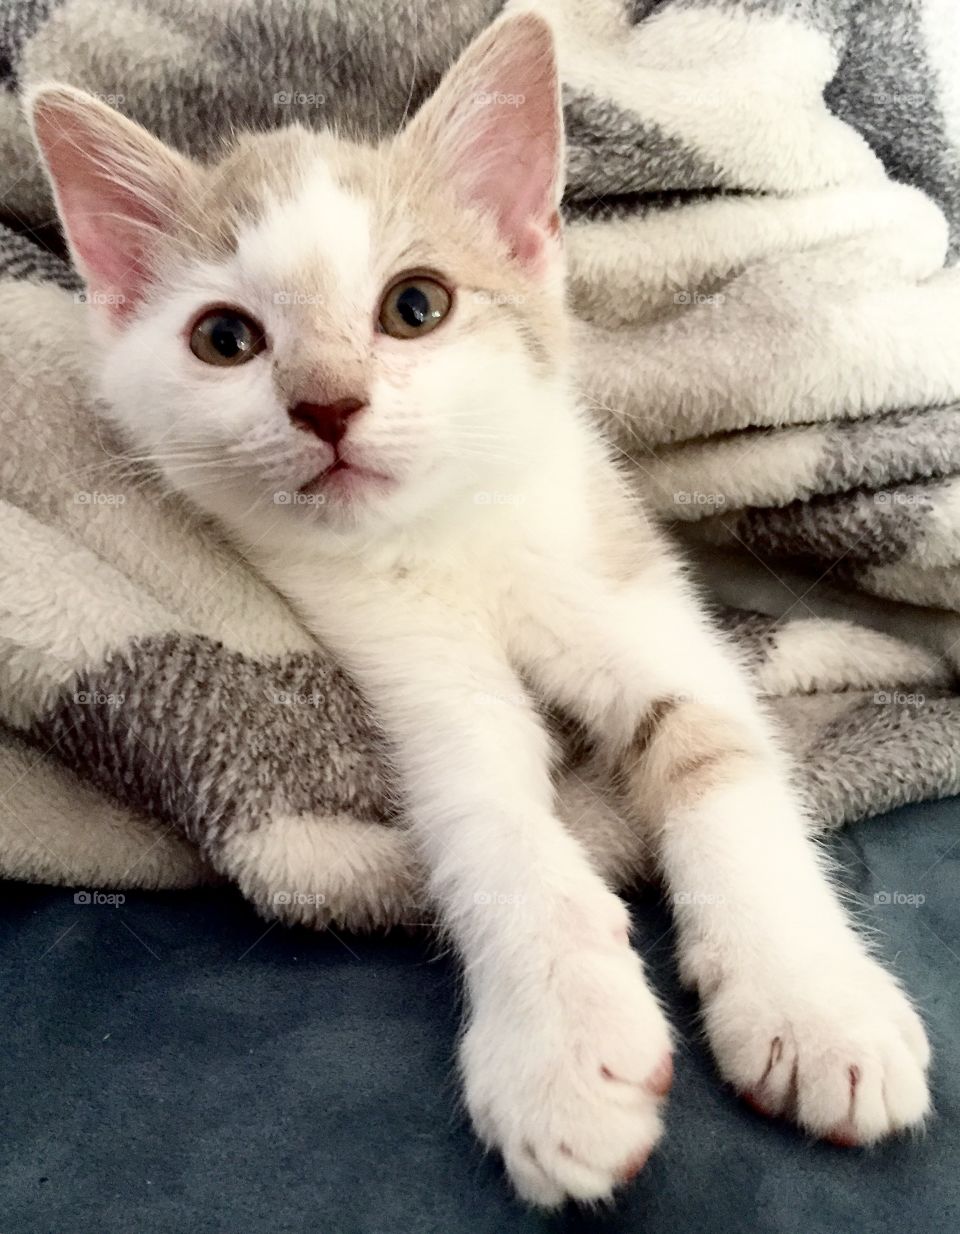 Kitten in a blanket